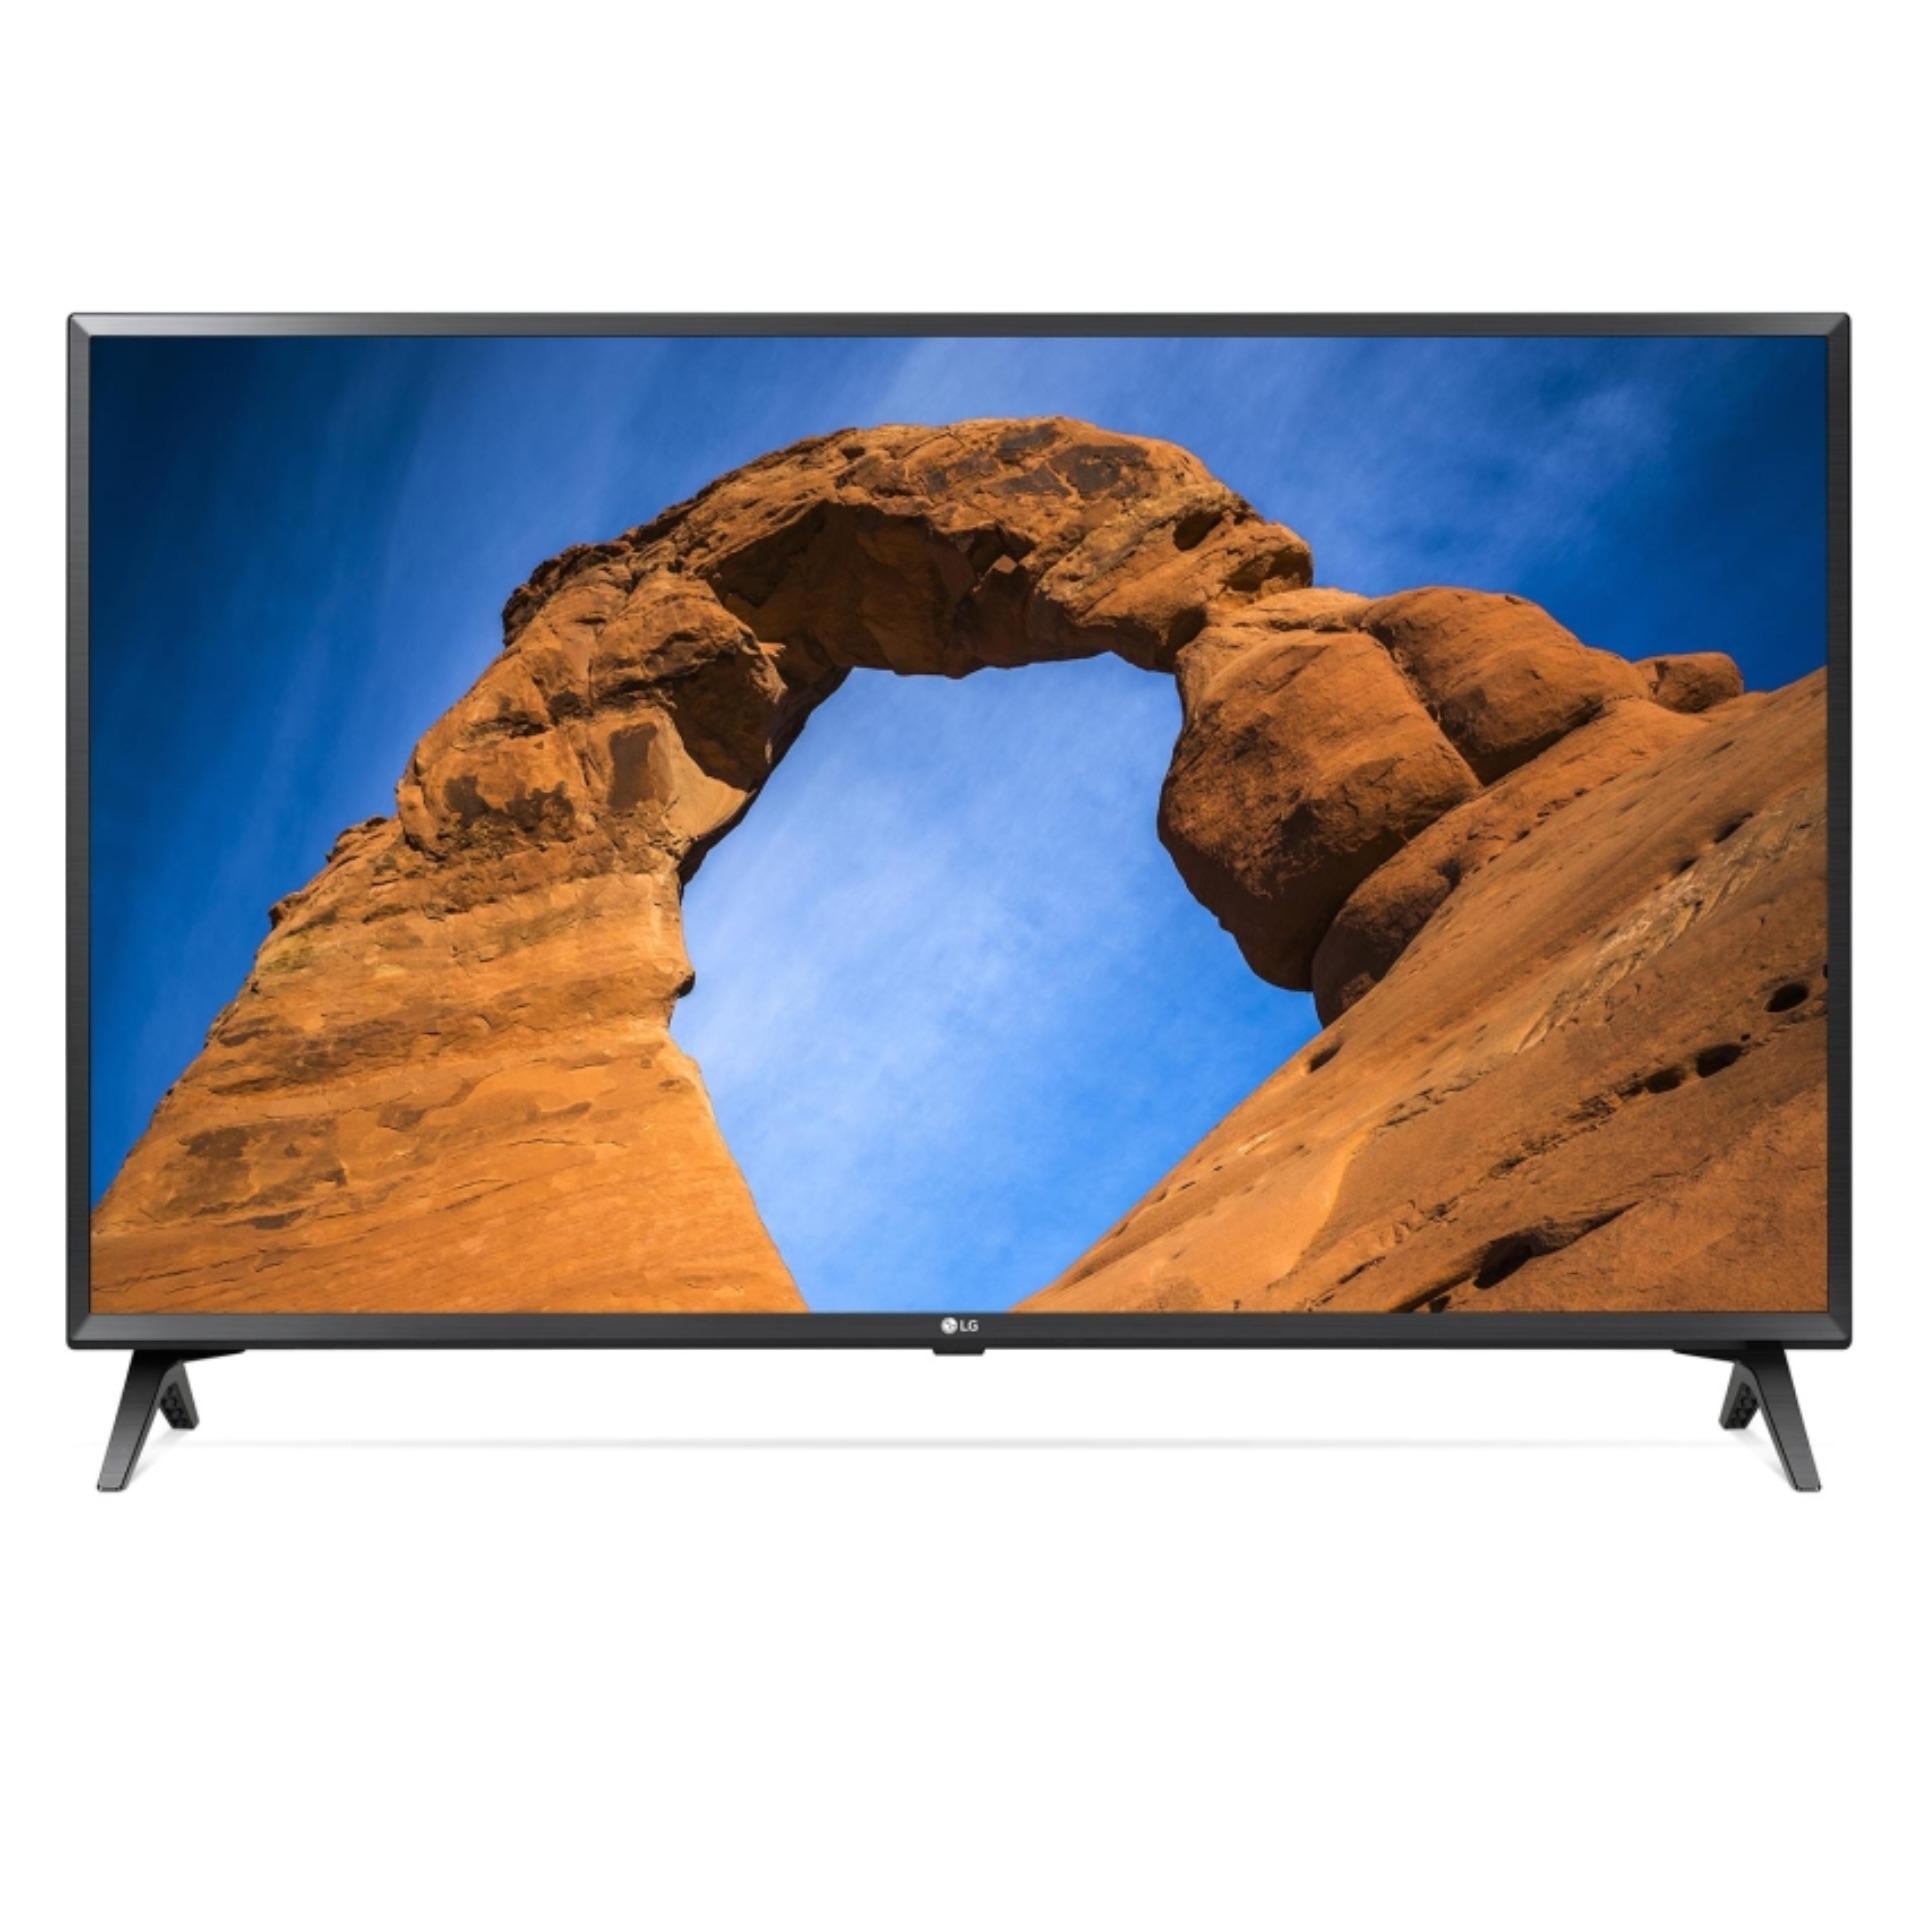 Smart TV LED LG 43inch Full HD - Model 43LK5400PTA (Đen) - Hãng phân phối chính thức